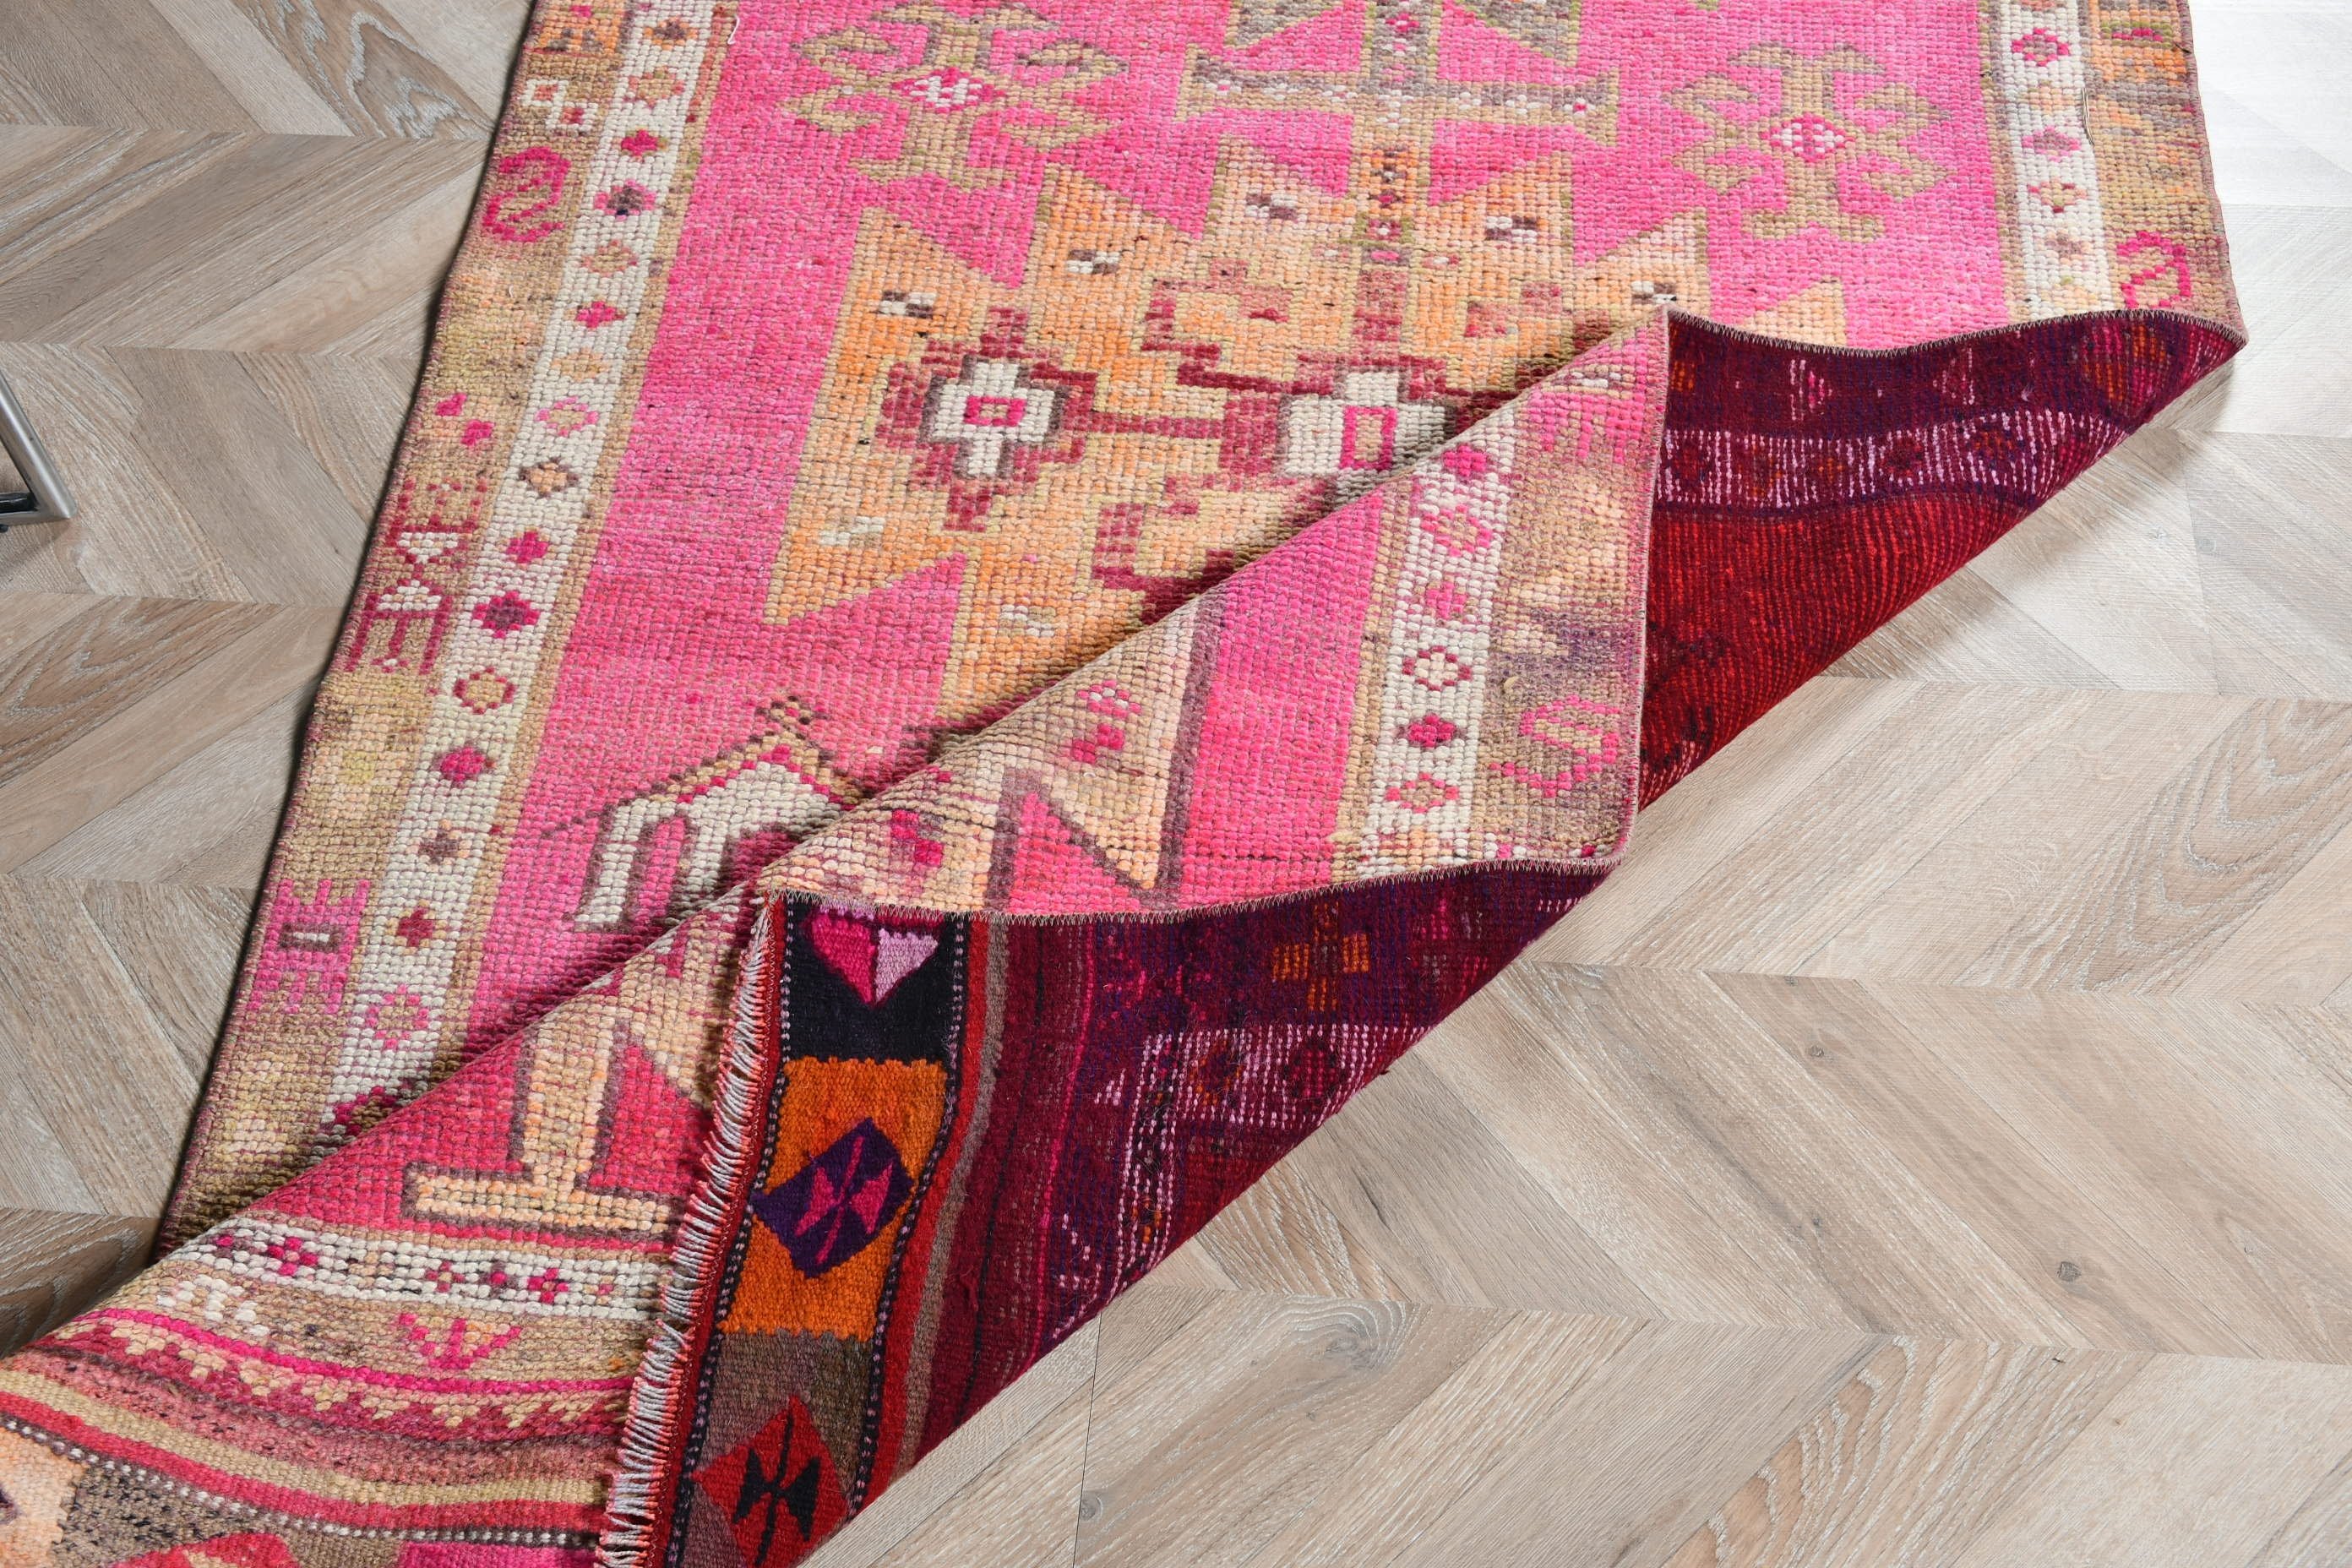 Art Rug, Rugs for Stair, 3.6x11.7 ft Runner Rug, Oriental Rugs, Corridor Rug, Vintage Rug, Pink Home Decor Rugs, Turkish Rug